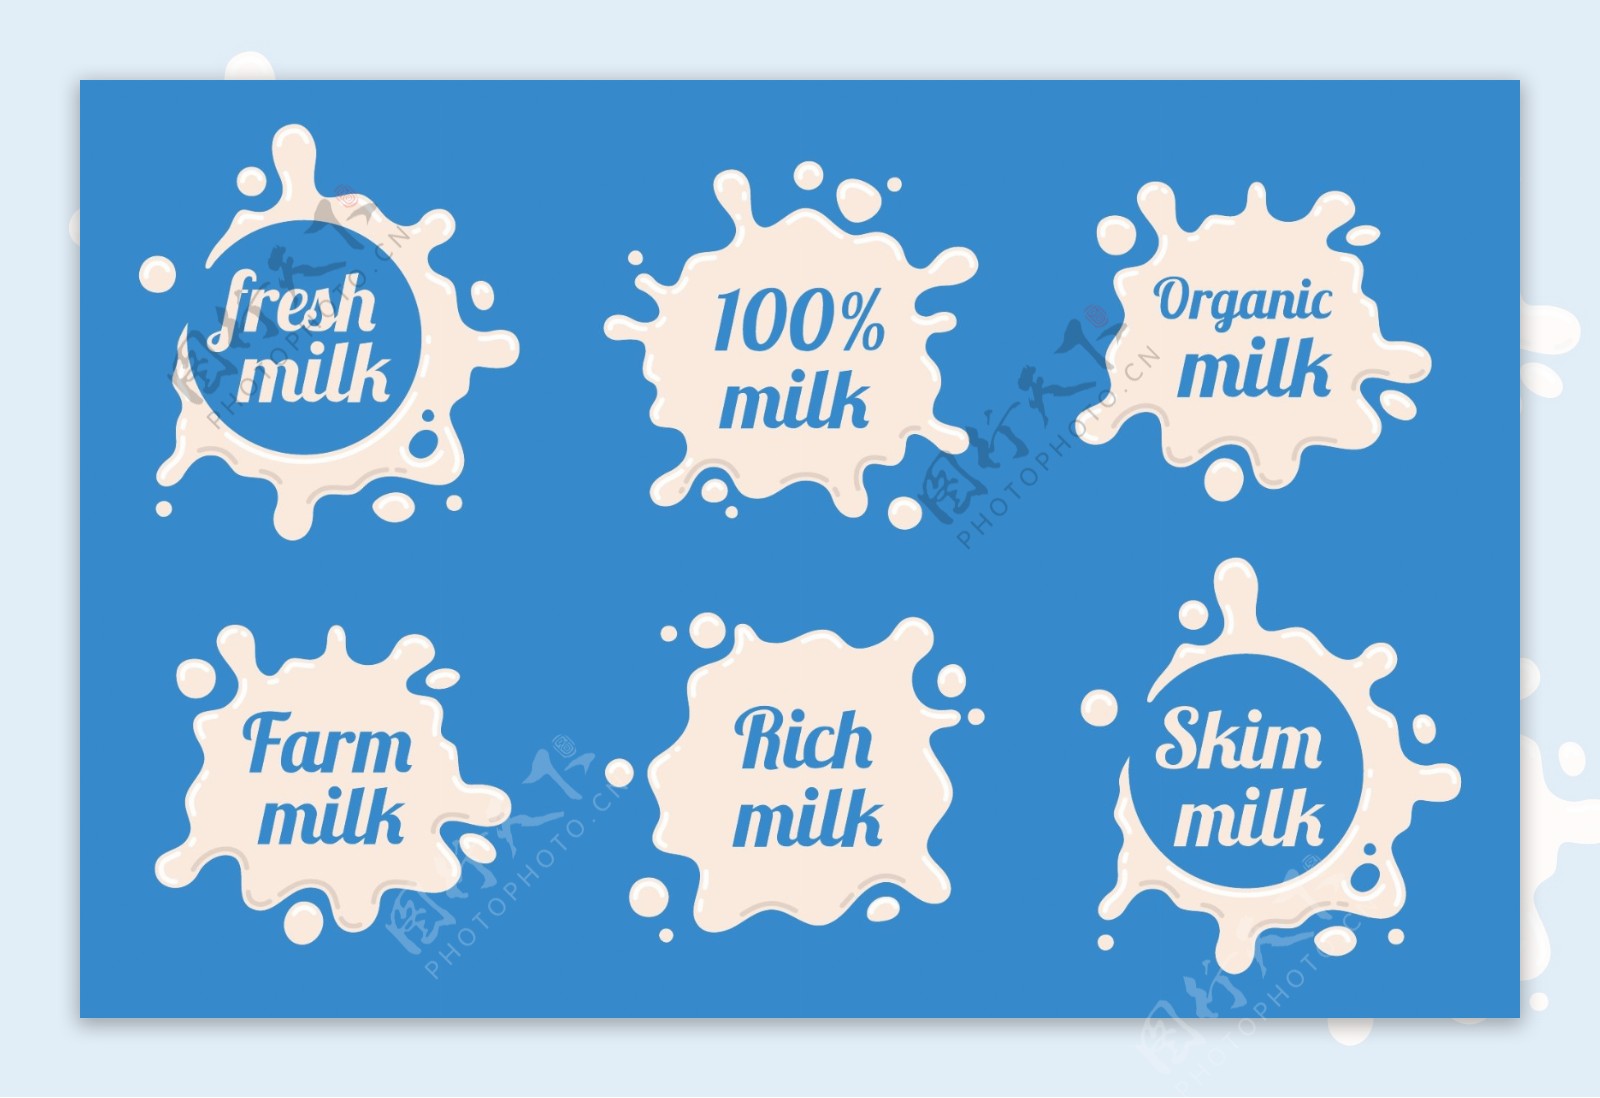 清新美味牛奶图标